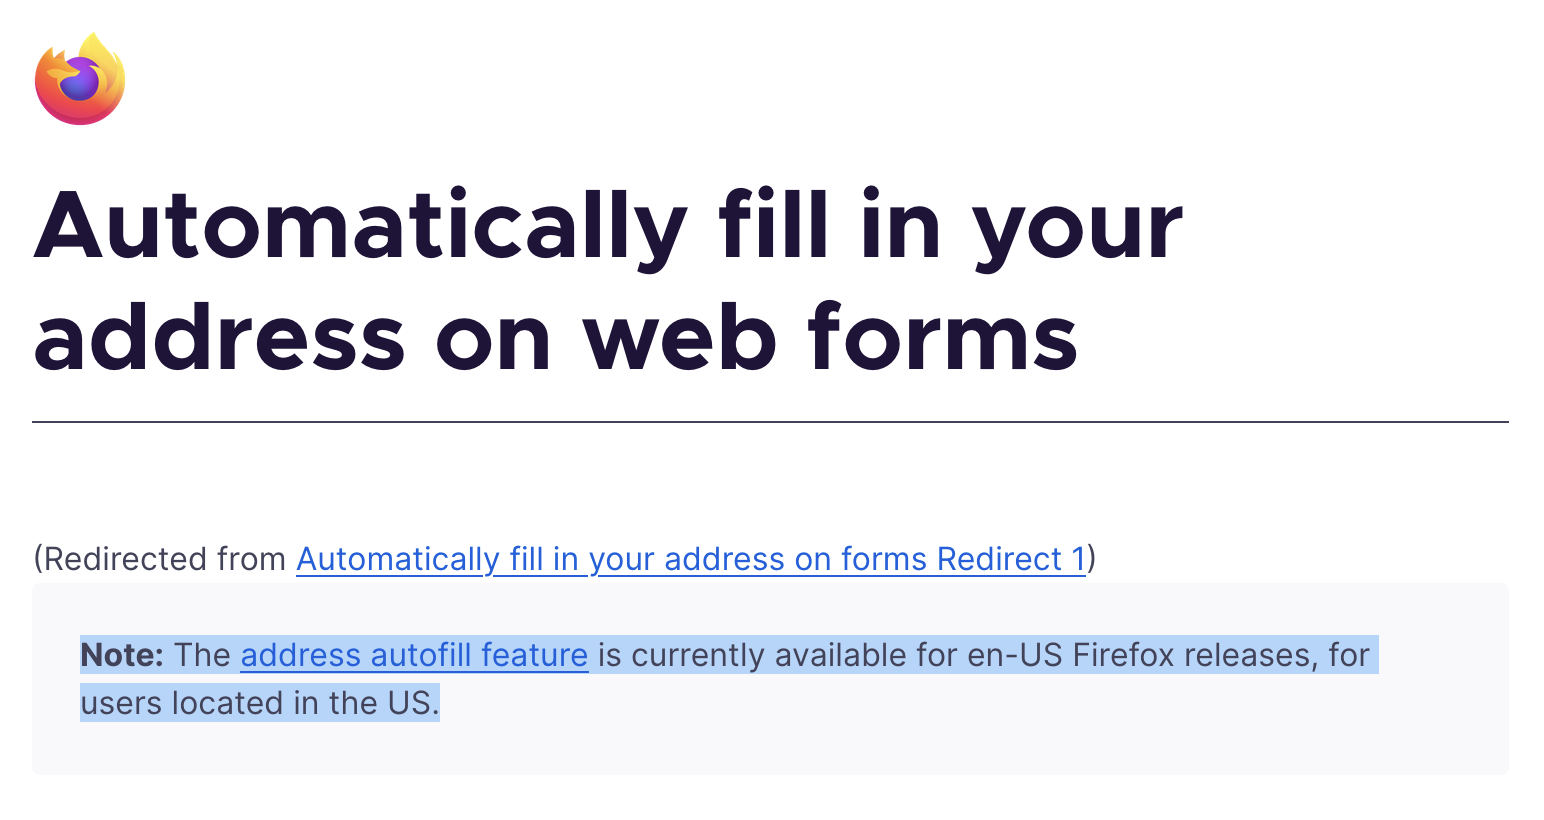 Firefoxのアドレス自動補完についてのサポートページ。現在はUS版のみ住所の入力補完をサポートしていると書かれている